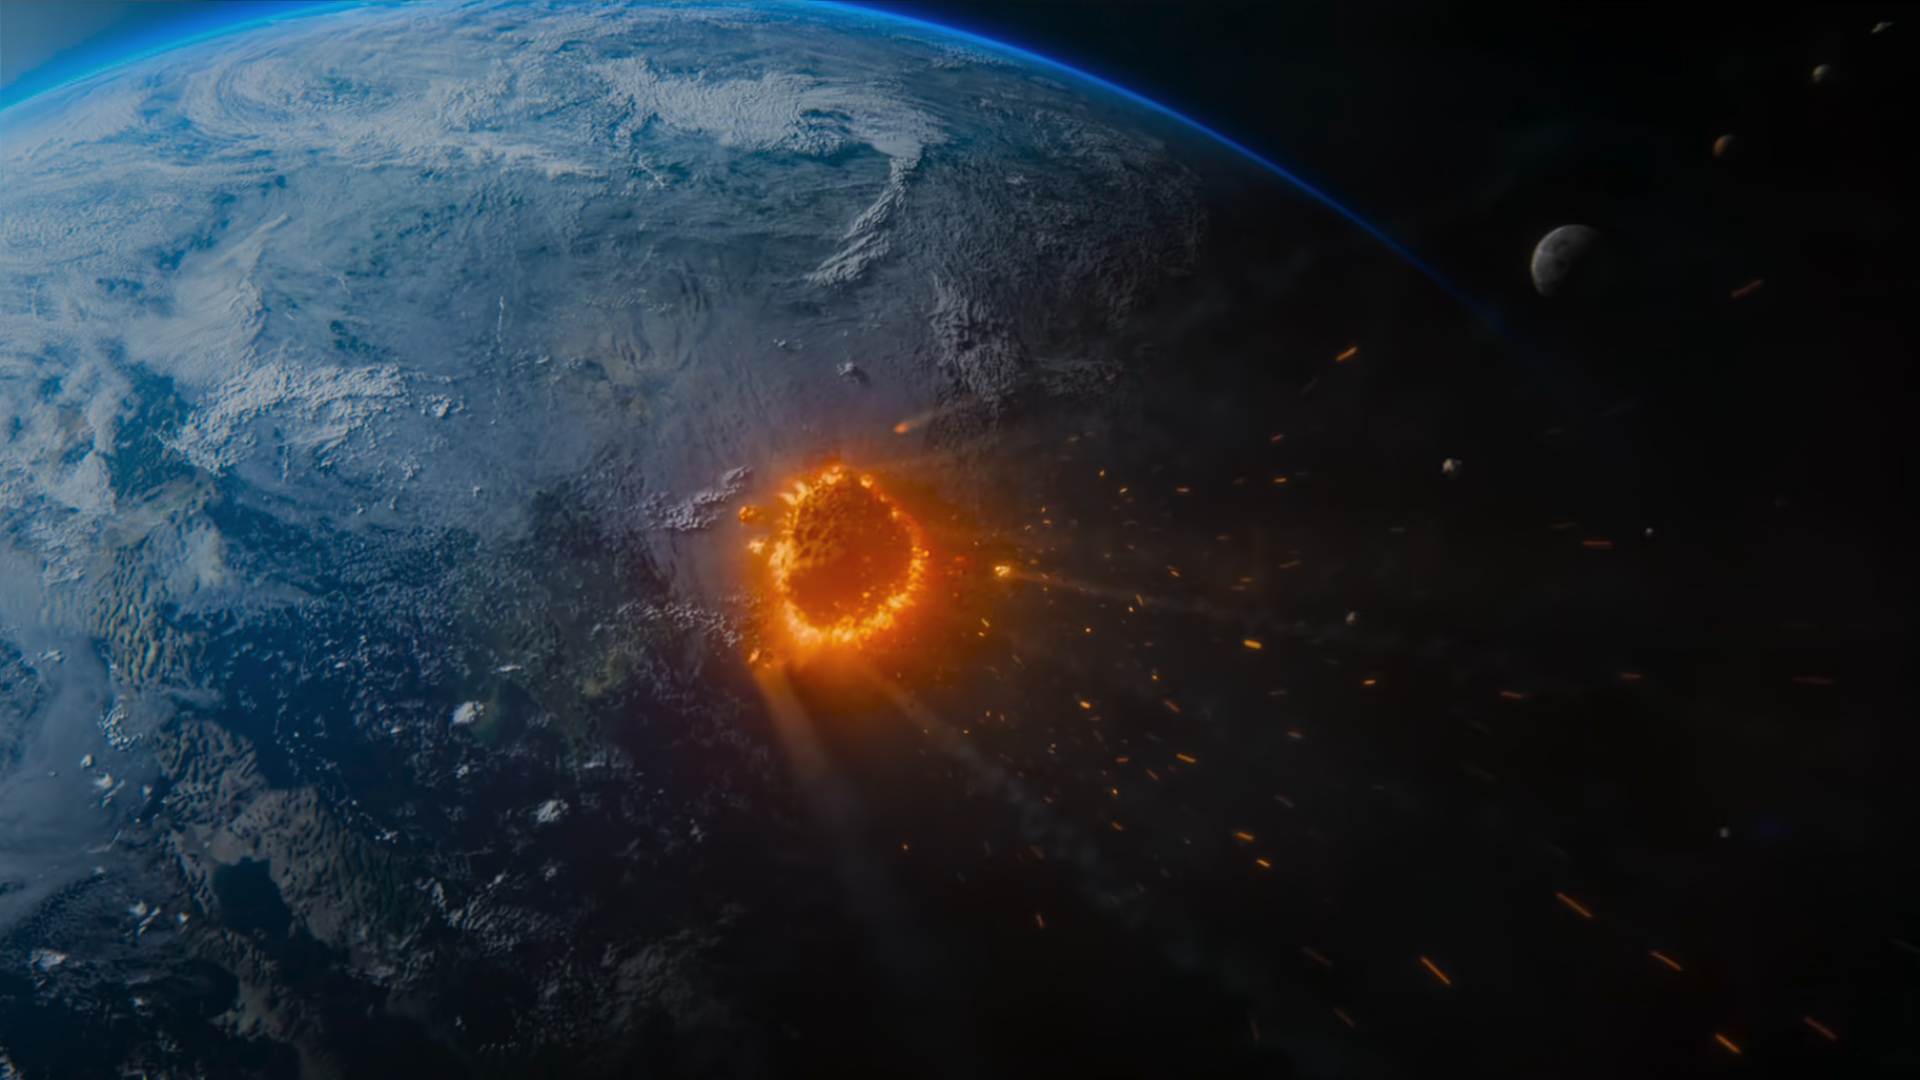 Meteoro está prestes a devastar a Terra em nova série da Netflix! Conheça Adeus, Terra